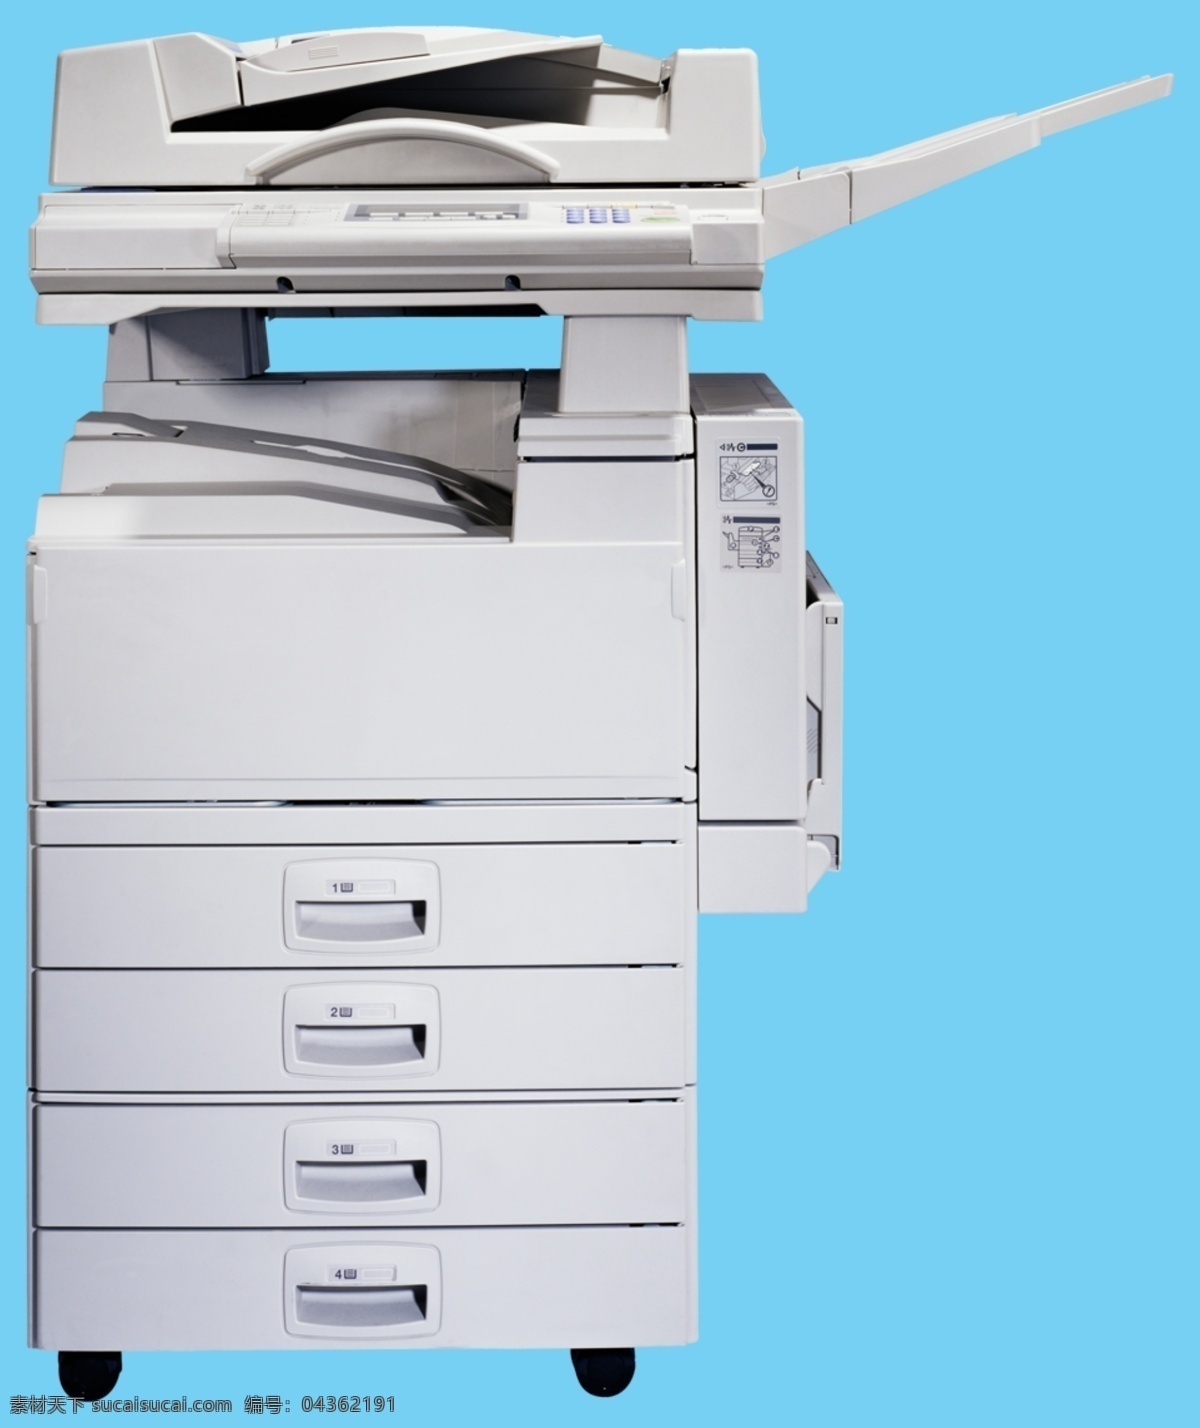 打印机图片 打印机 打印机素材 电器 机器